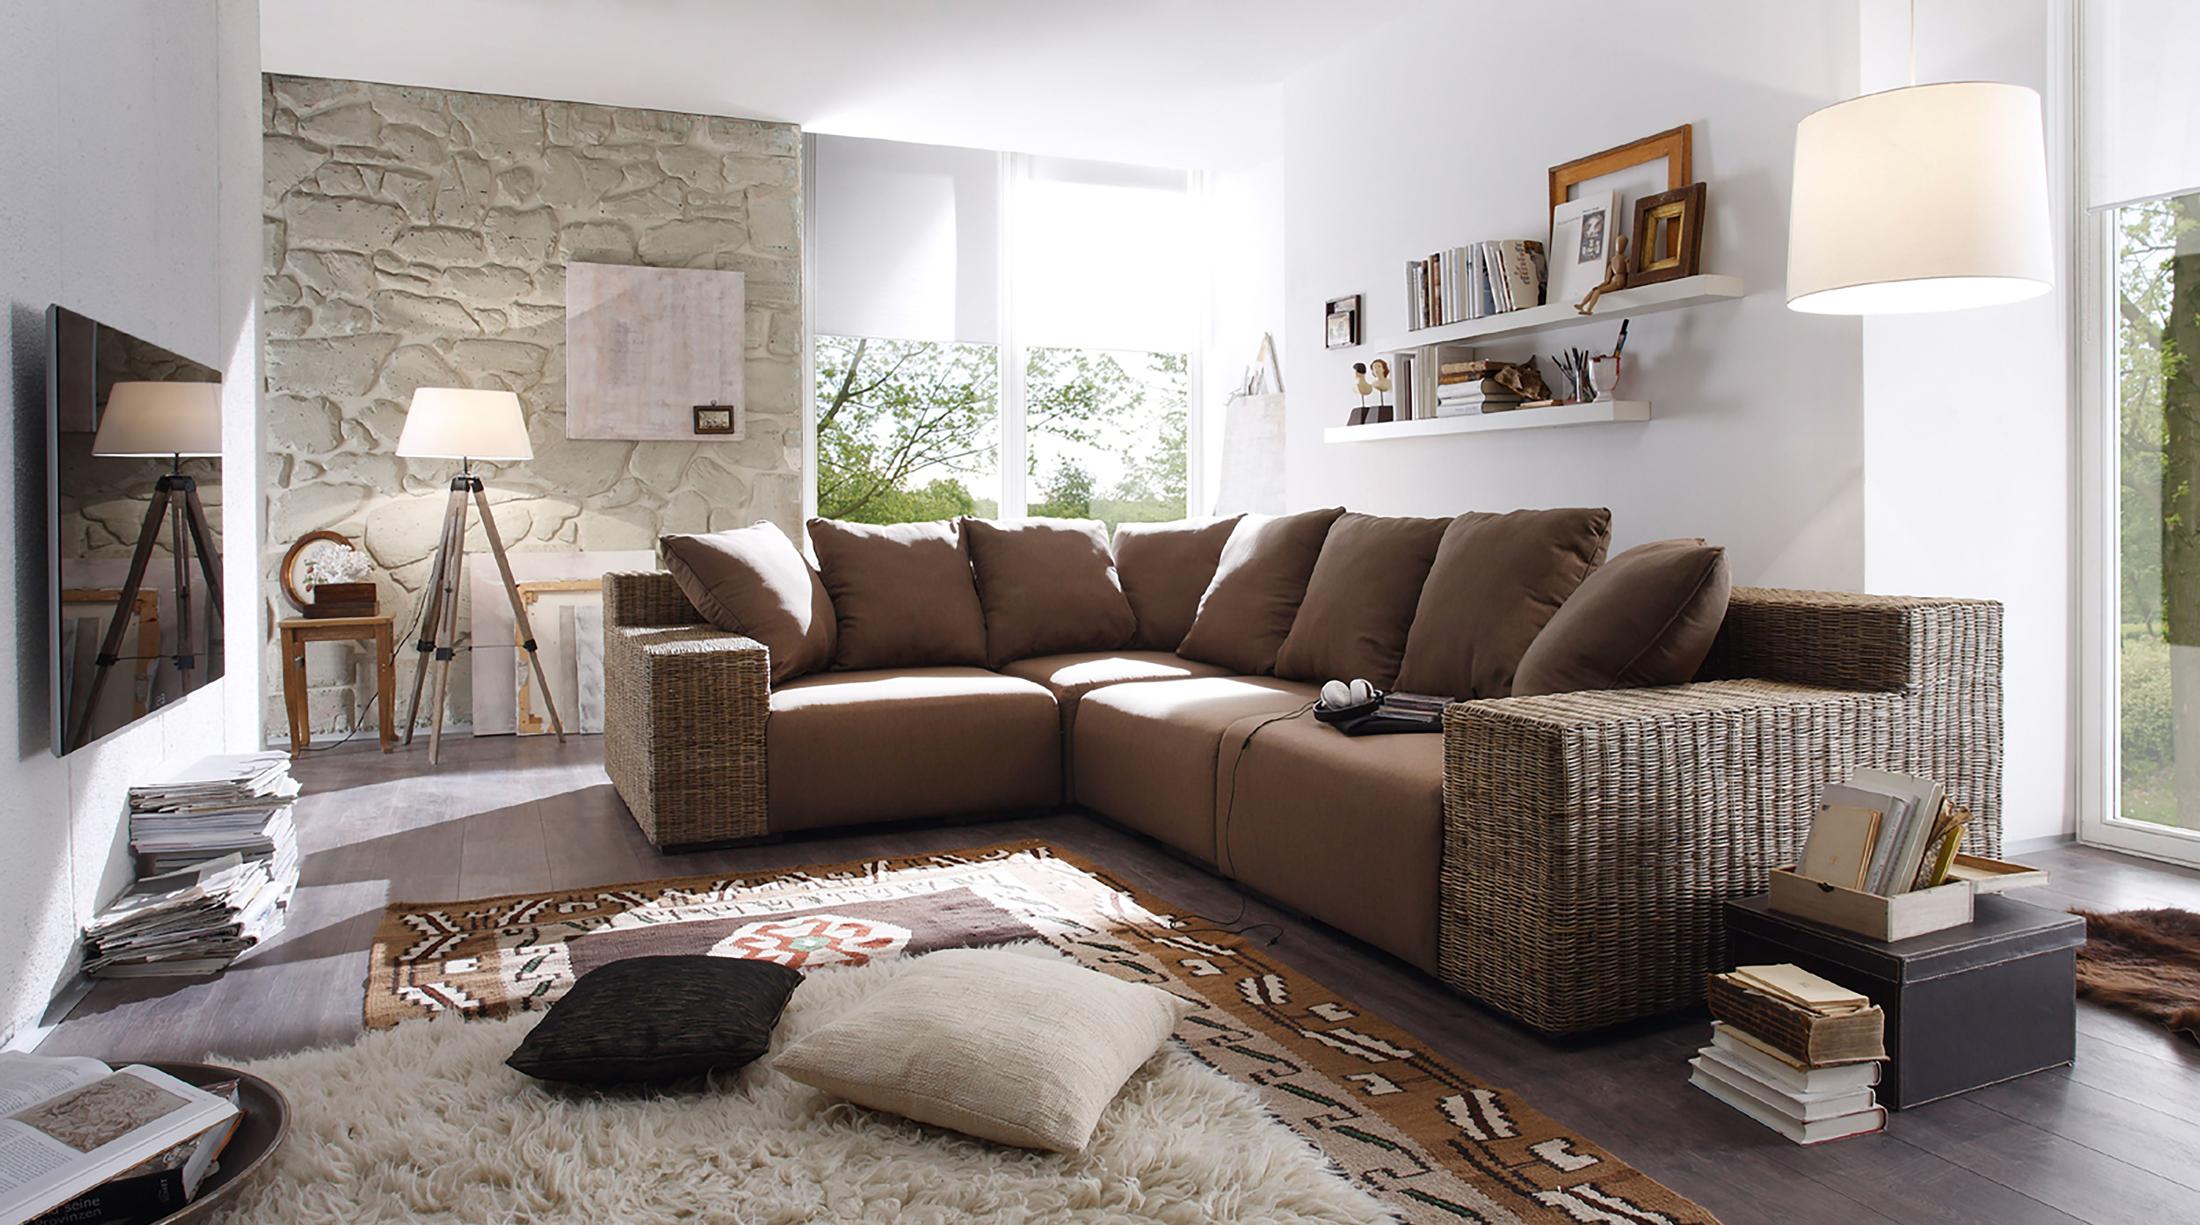 Couch mit Rattan-Gestell #regal #teppich #wandgestaltung #stehlampe #sofa #ethno #braunessofa #rattanmöbel ©Massivum